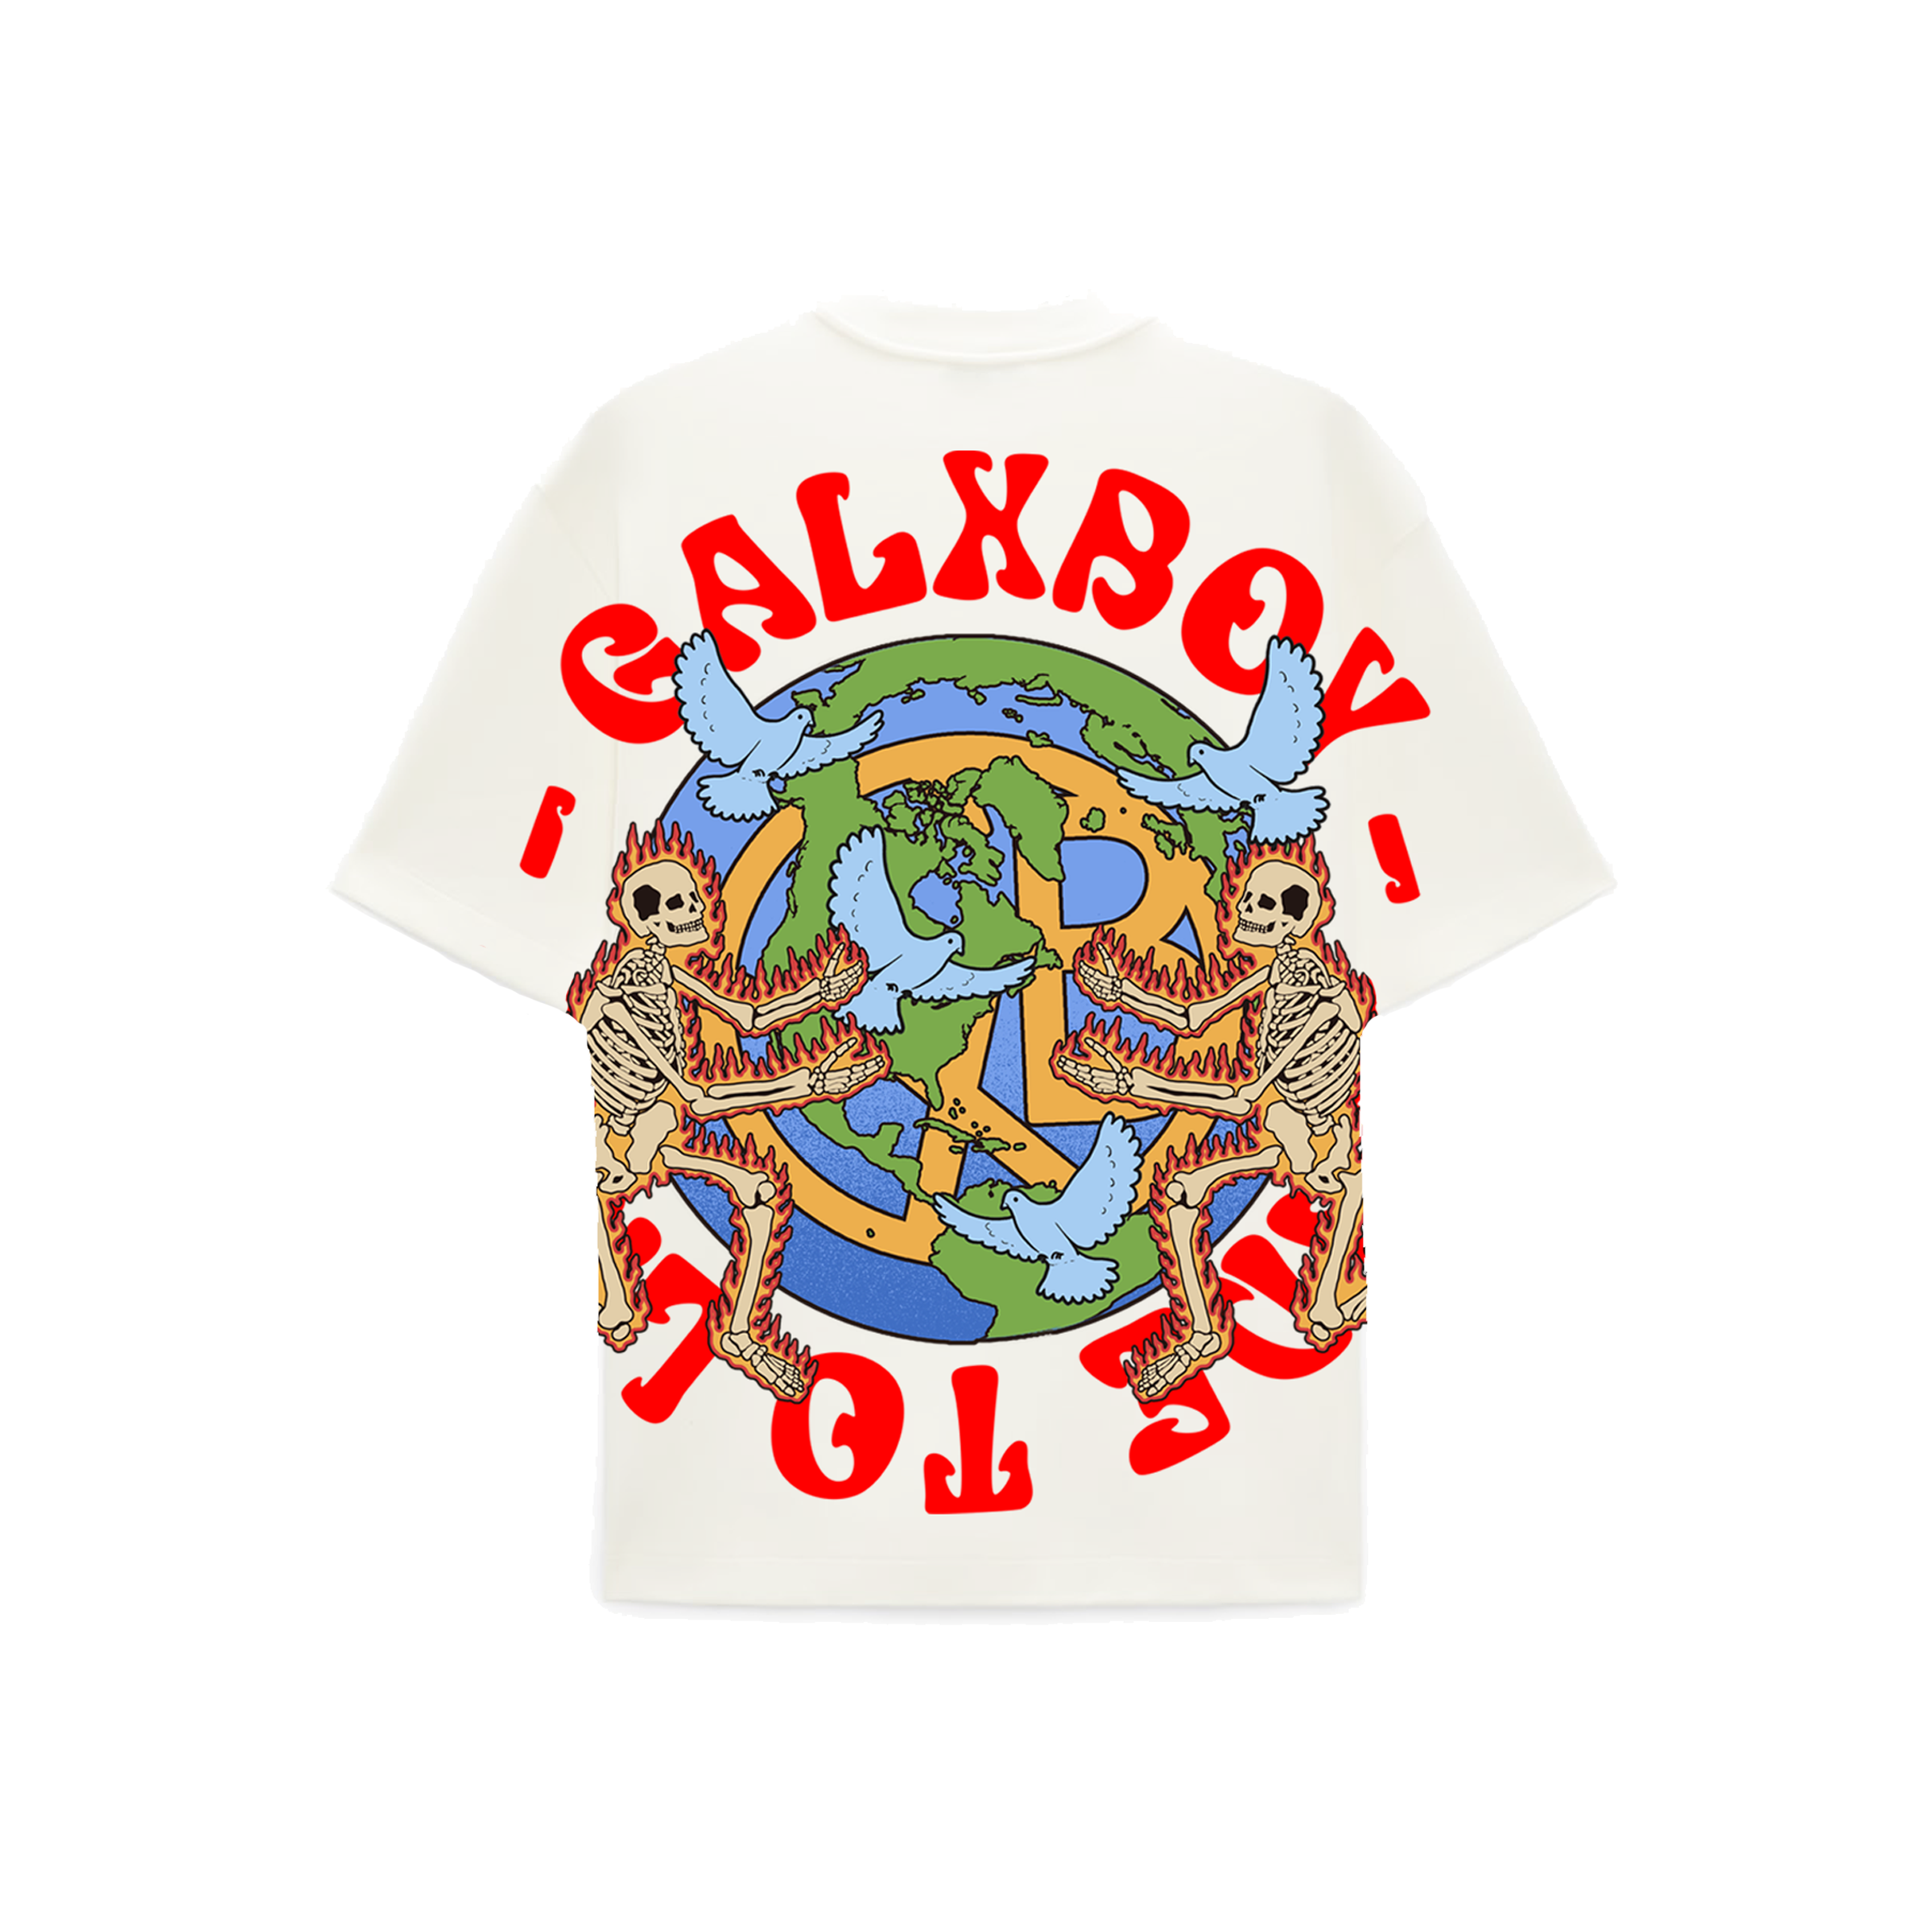 WORLD PEACE T-SHIRT – GALXBOY